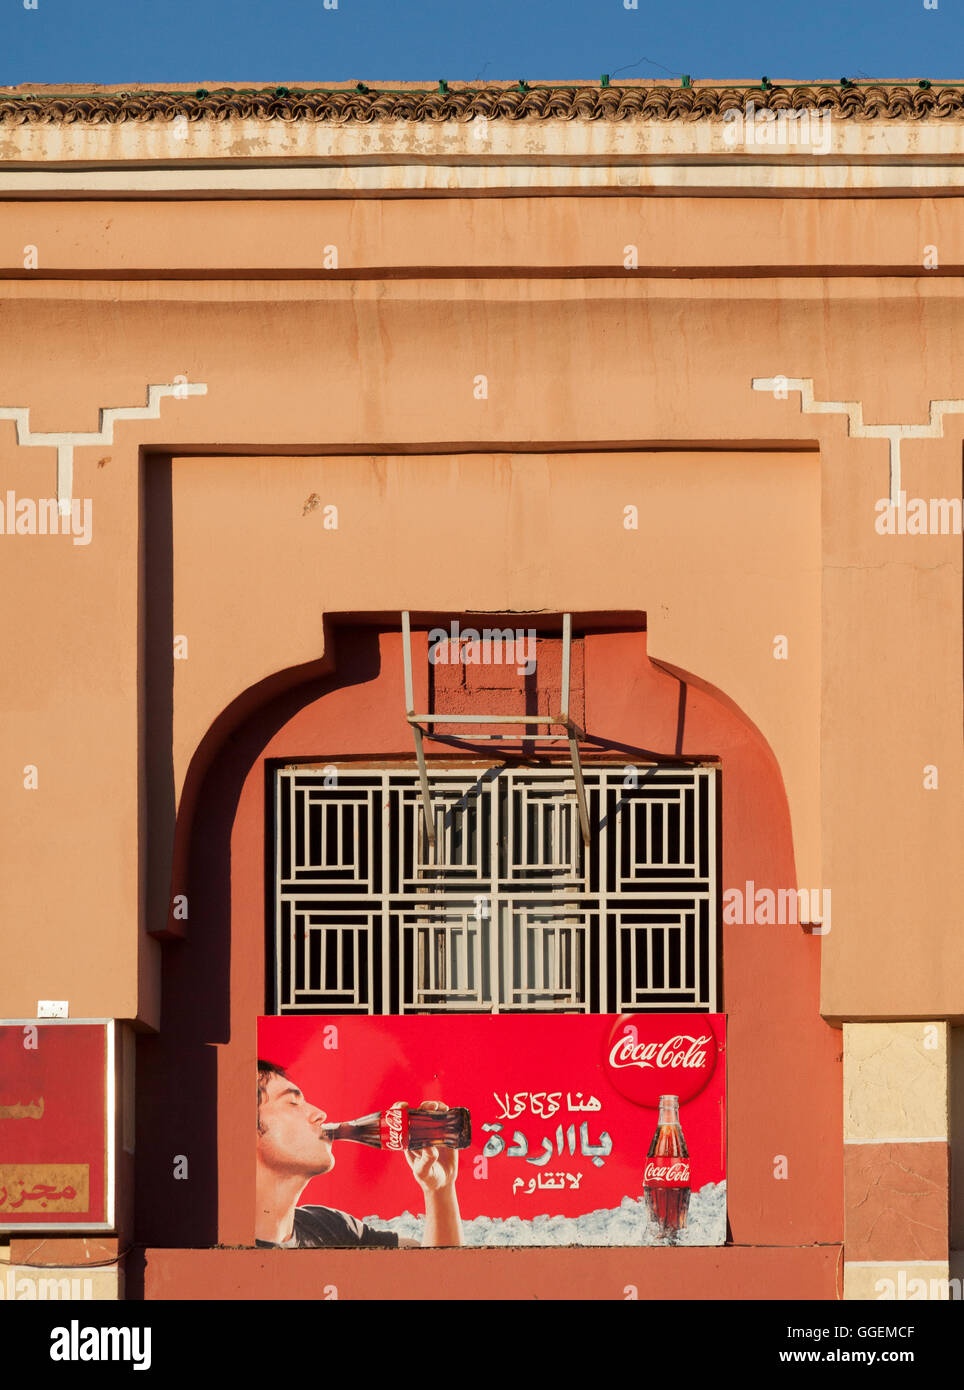 Une Publicité pour Coca Cola dans la langue arabe à l'extérieur d'un magasin à Ouarzazate, Maroc, Afrique du Nord. Banque D'Images